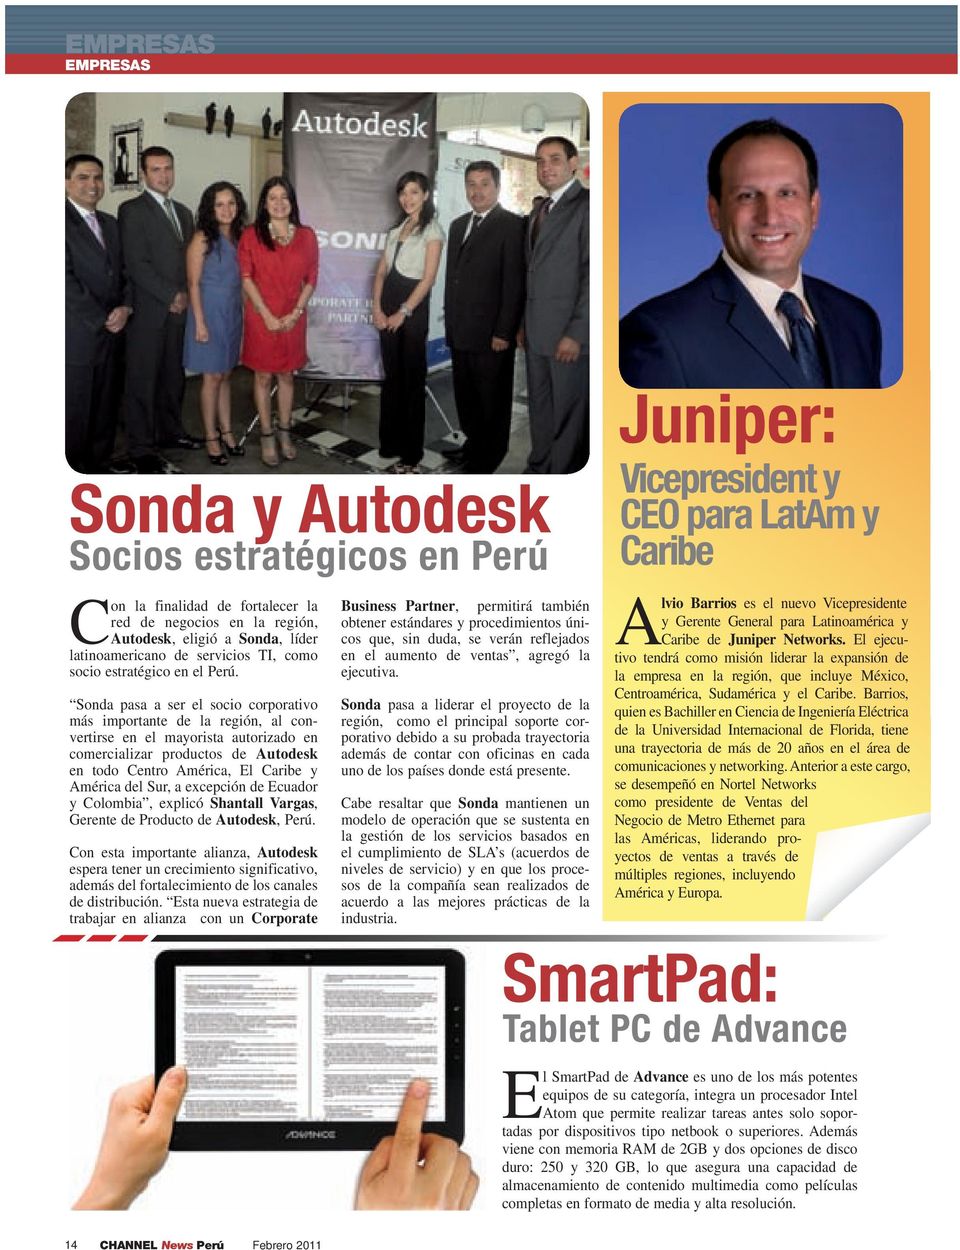 Sonda pasa a ser el socio corporativo más importante de la región, al convertirse en el mayorista autorizado en comercializar productos de Autodesk en todo Centro América, El Caribe y América del